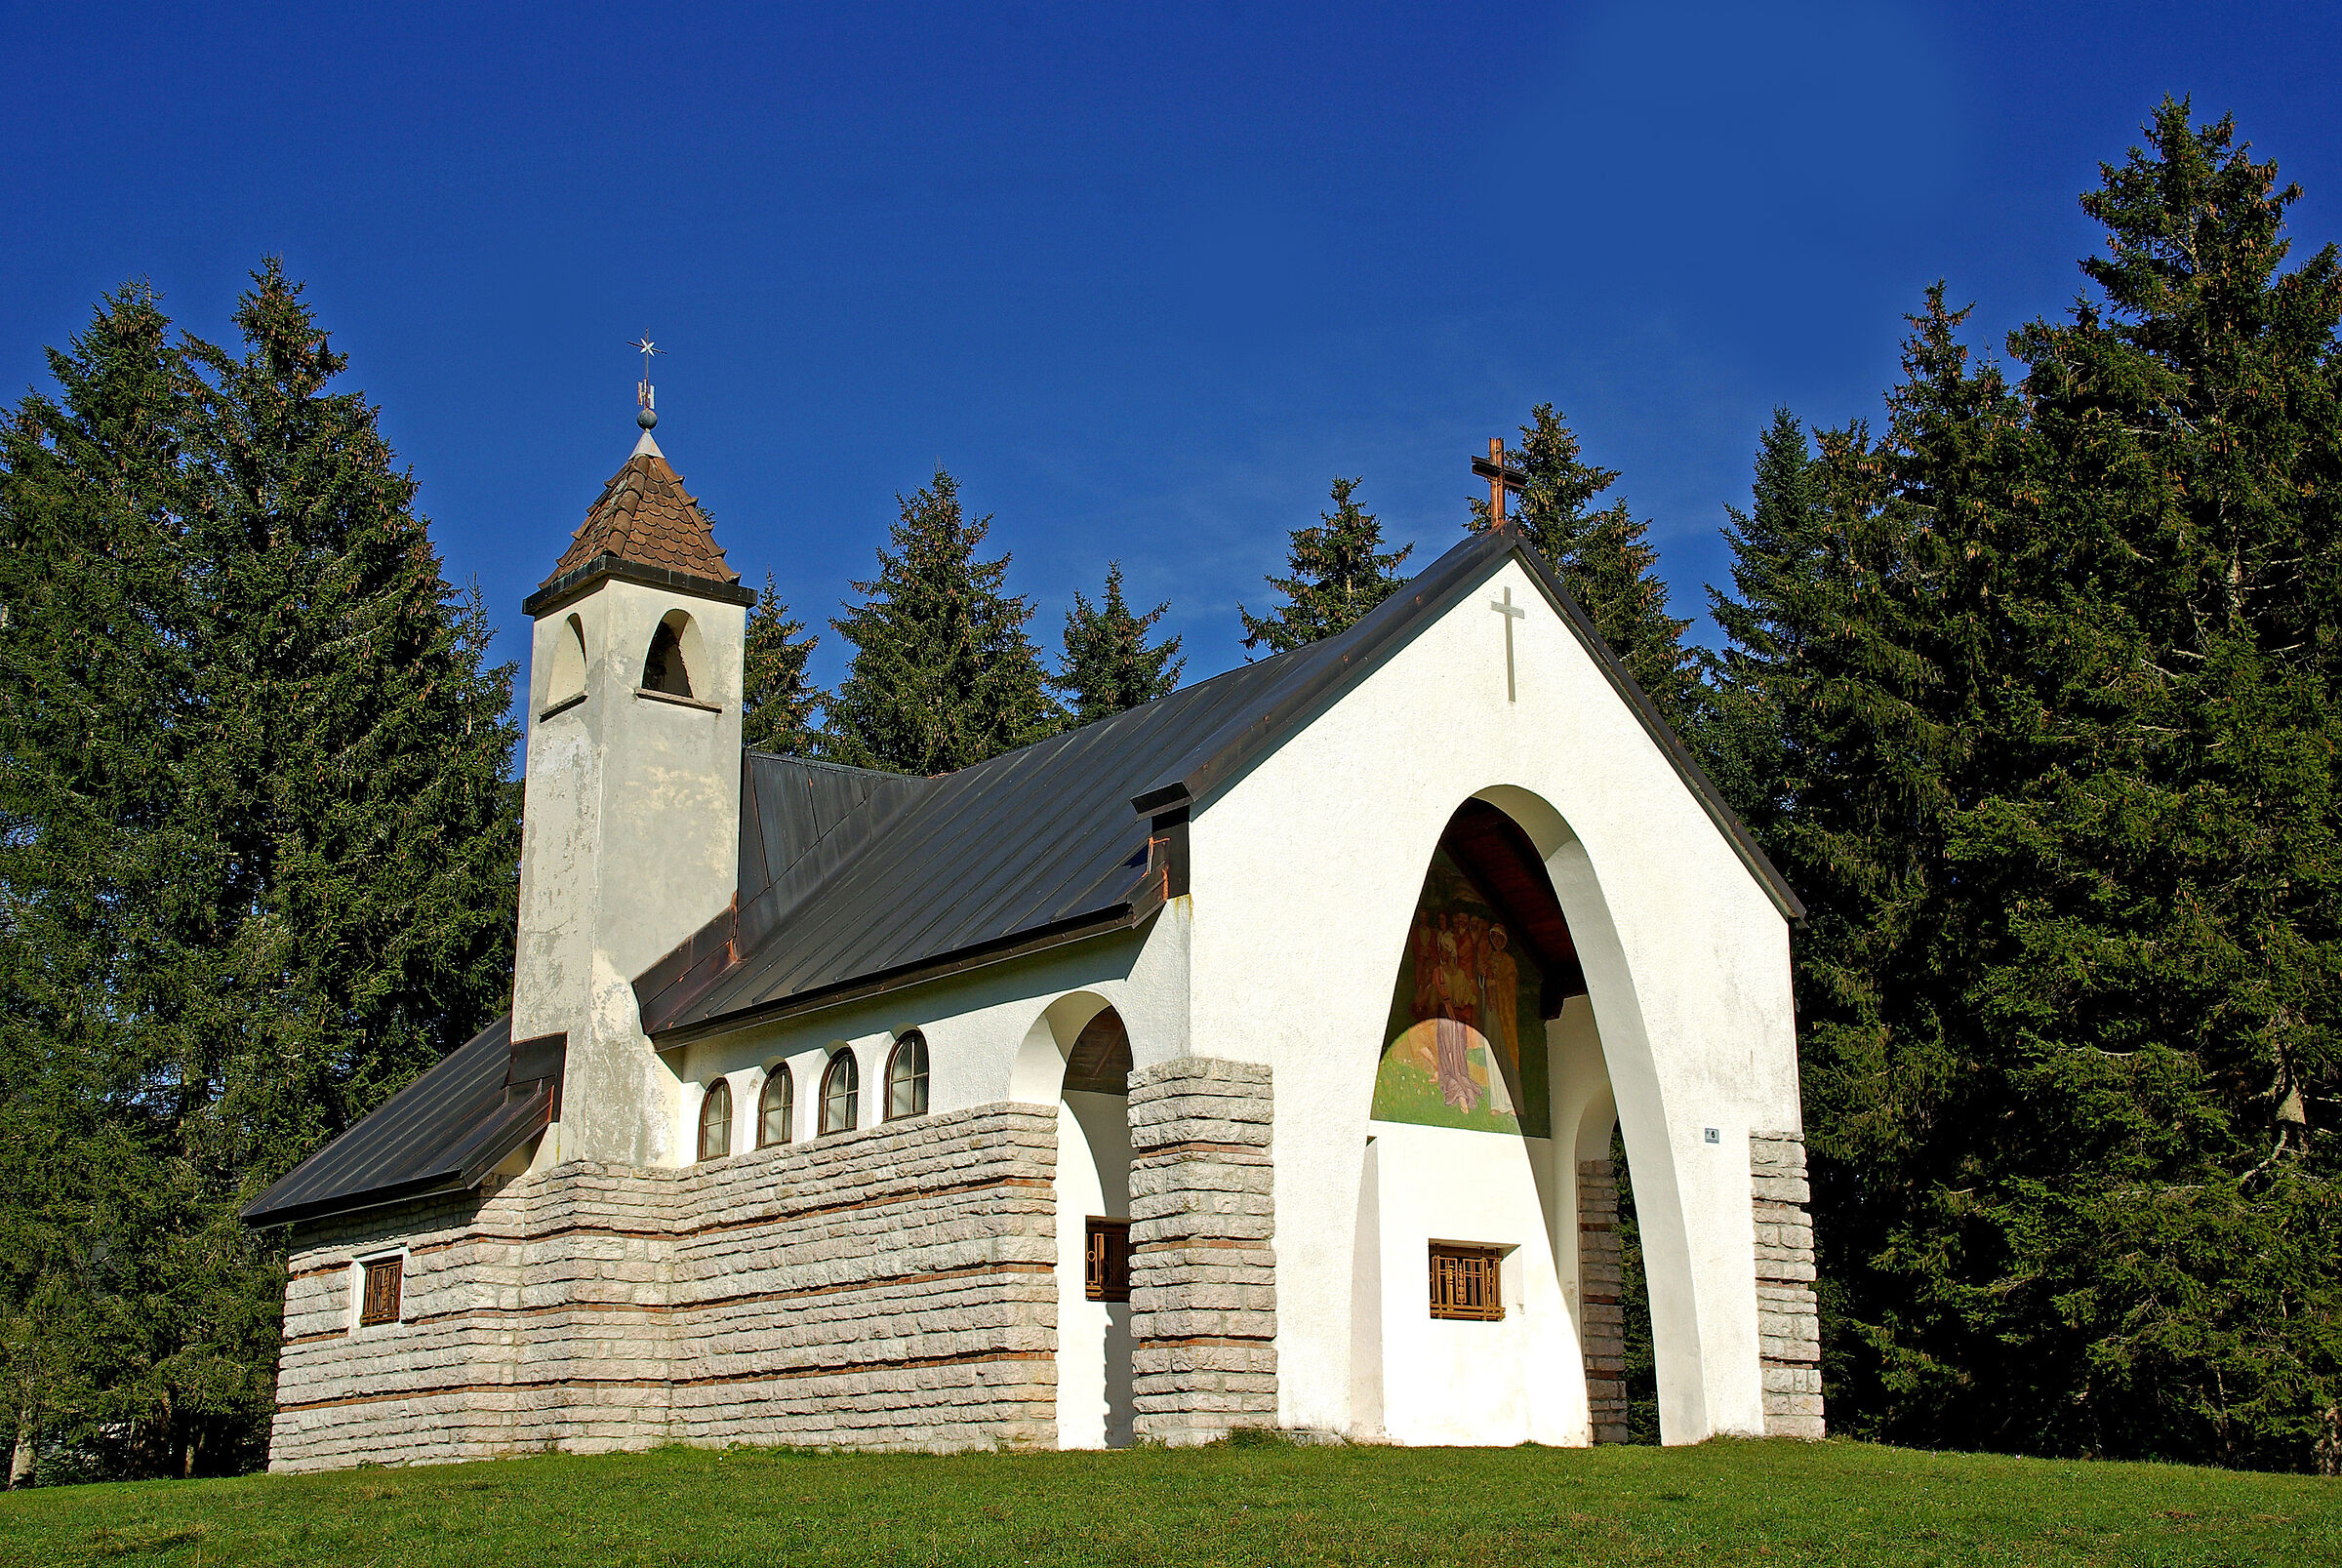 Small church in Trentino...